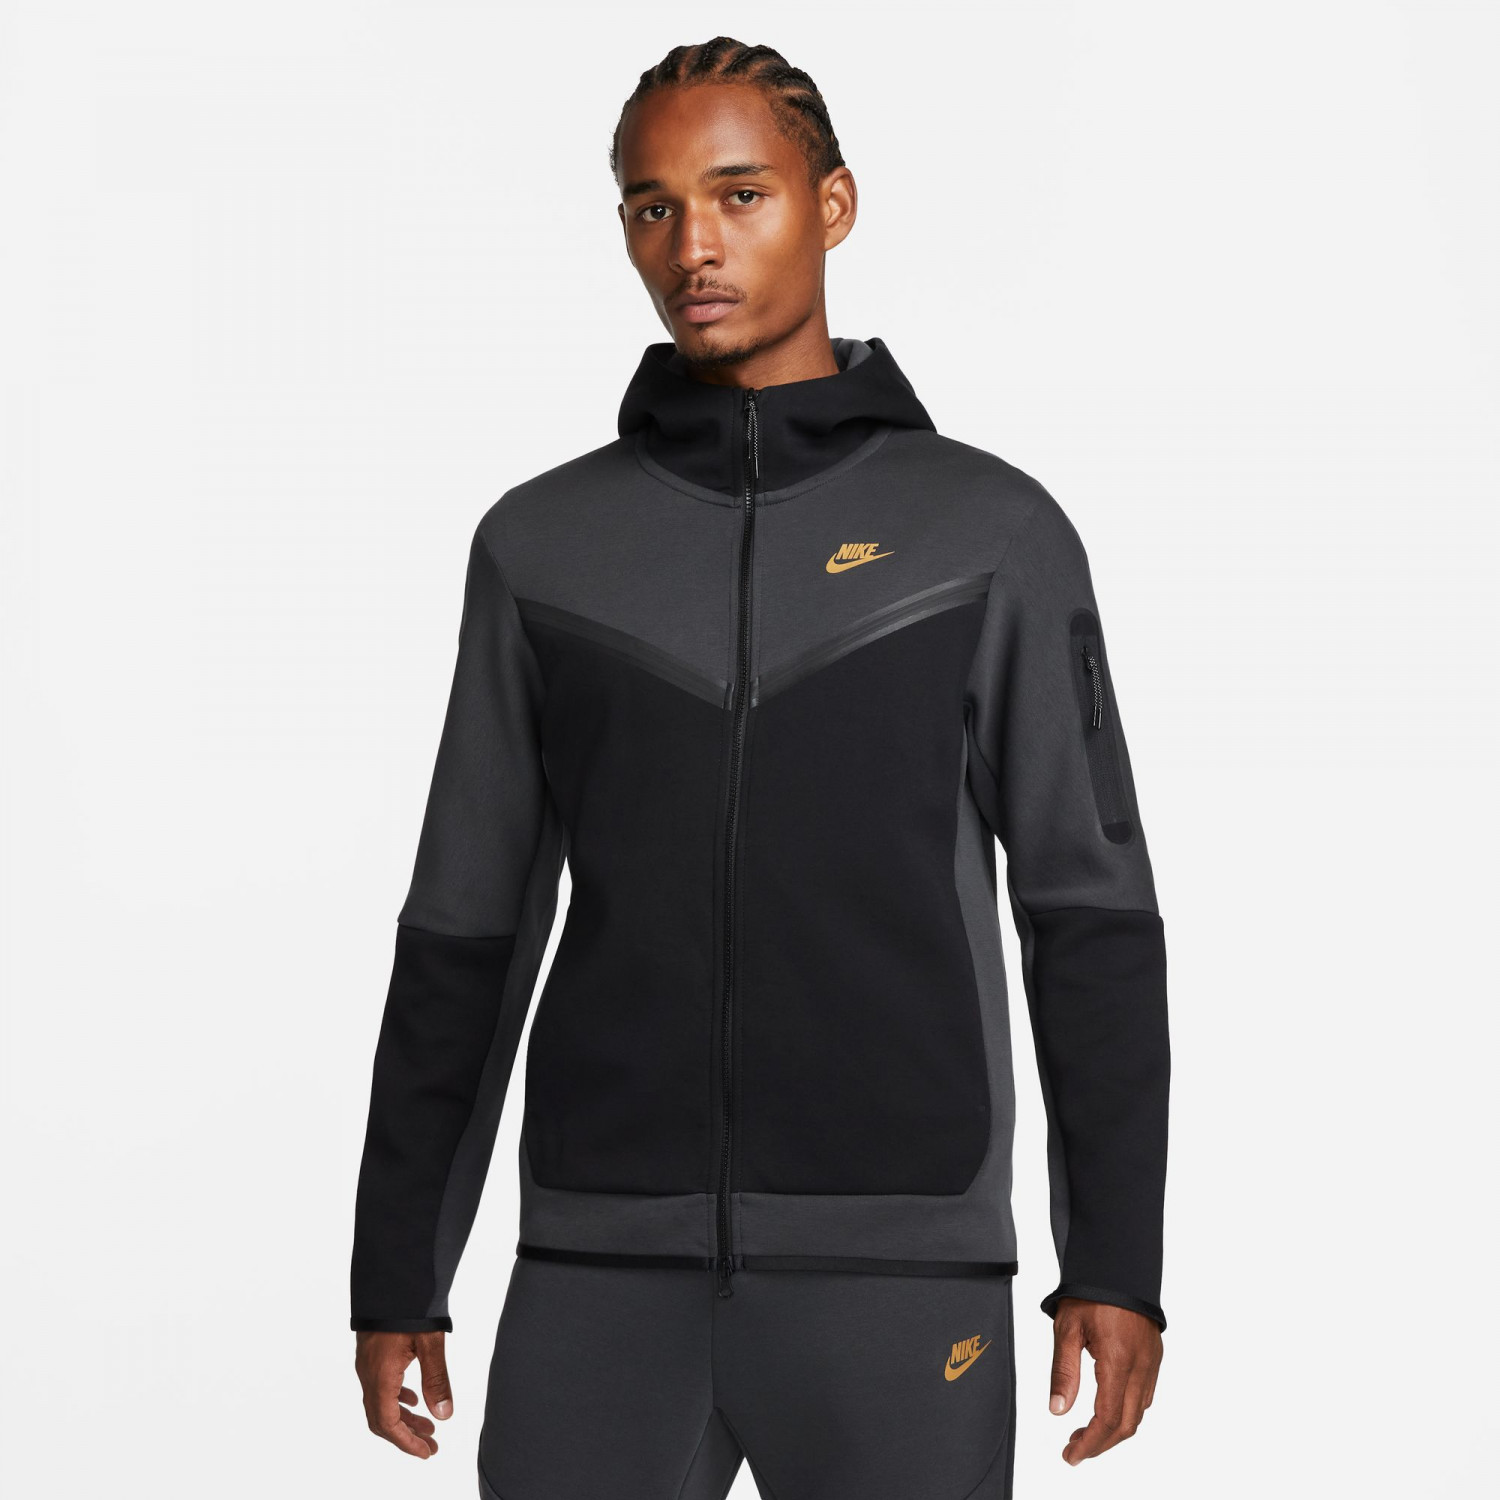 Veste survêtement Nike Tech Fleece gris or sur